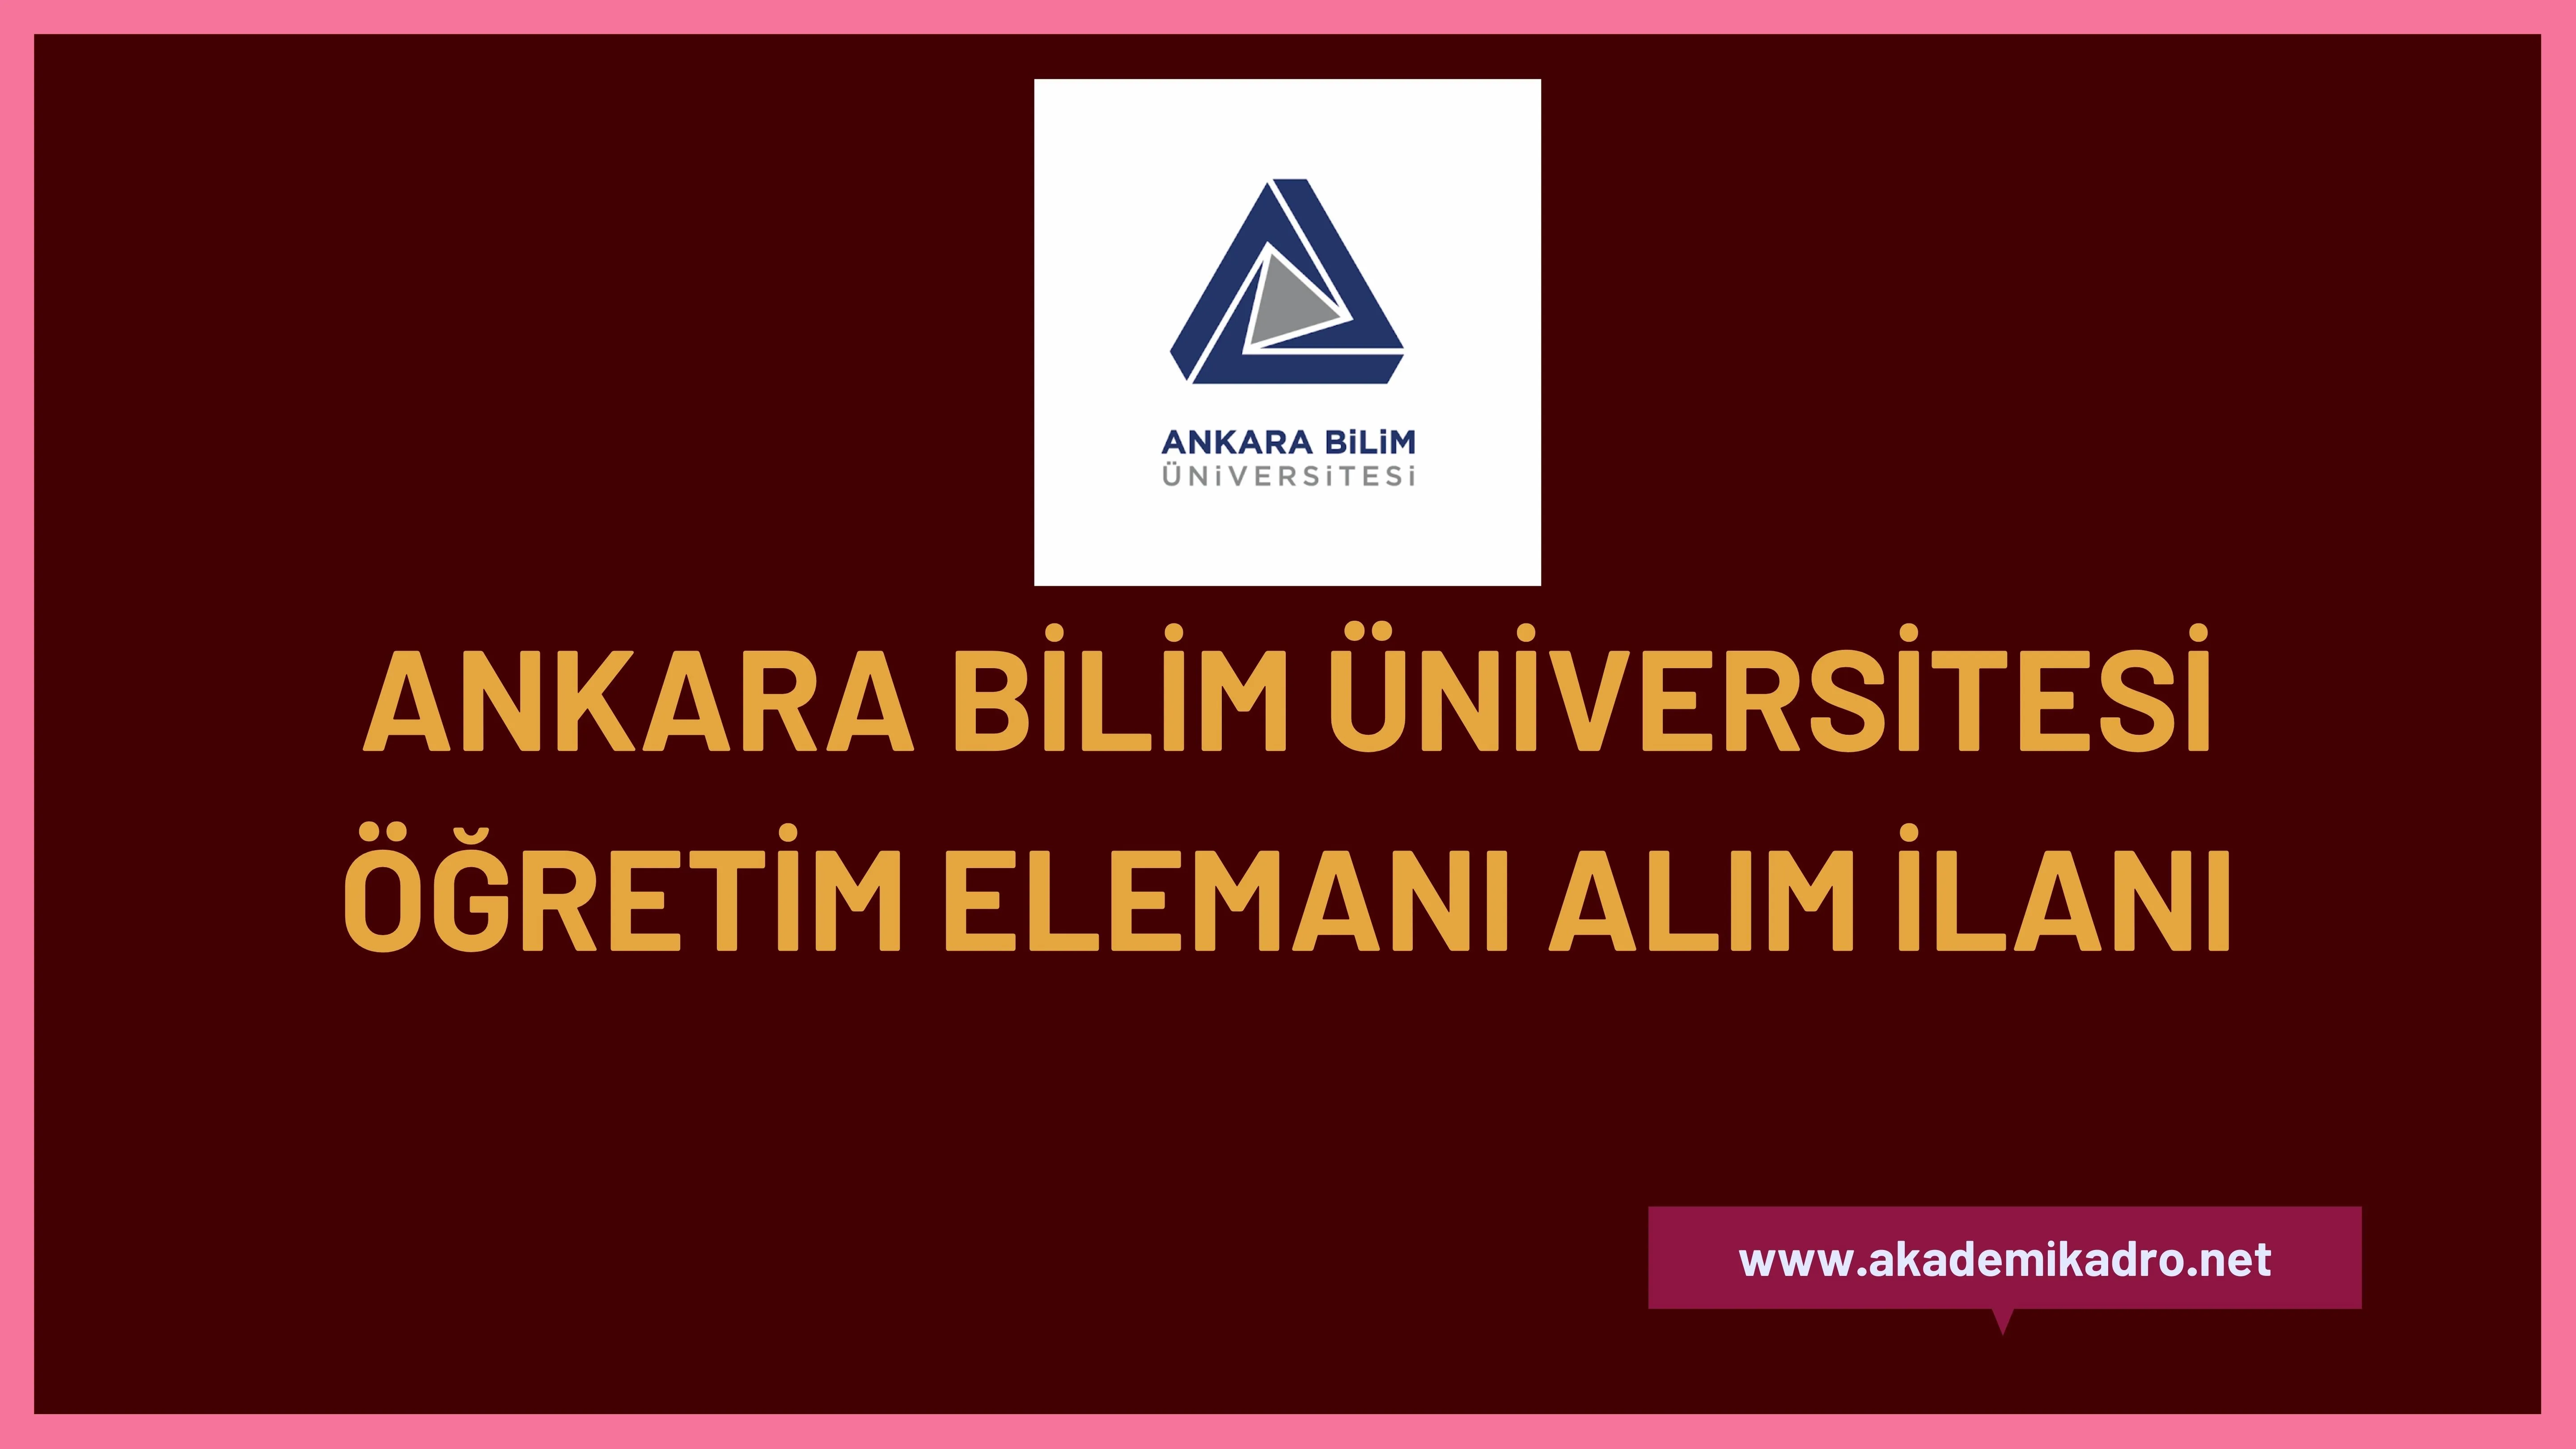 Ankara Bilim Üniversitesi Araştırma görevlisi, öğretim görevlisi ve öğretim üyesi alacaktır.